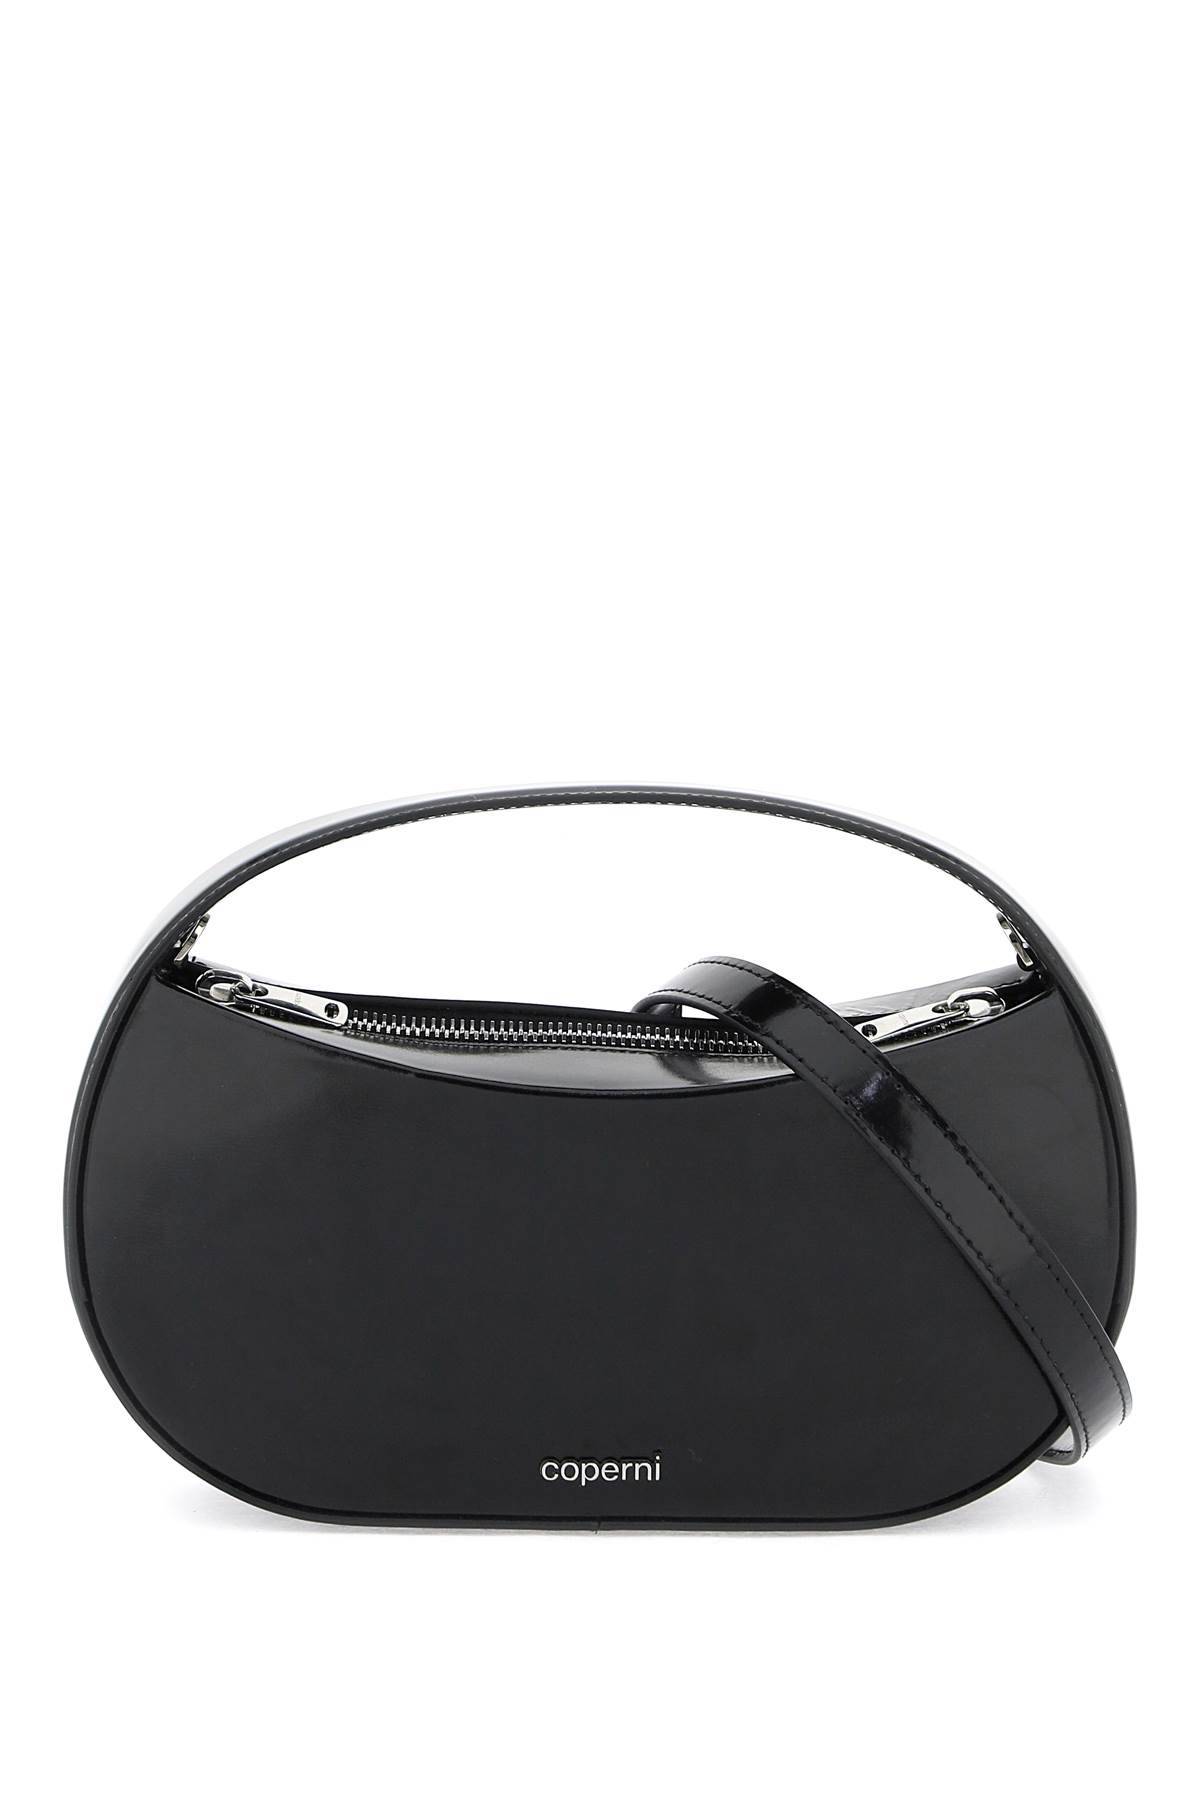 Shop Coperni "sound Swipe Handbag"